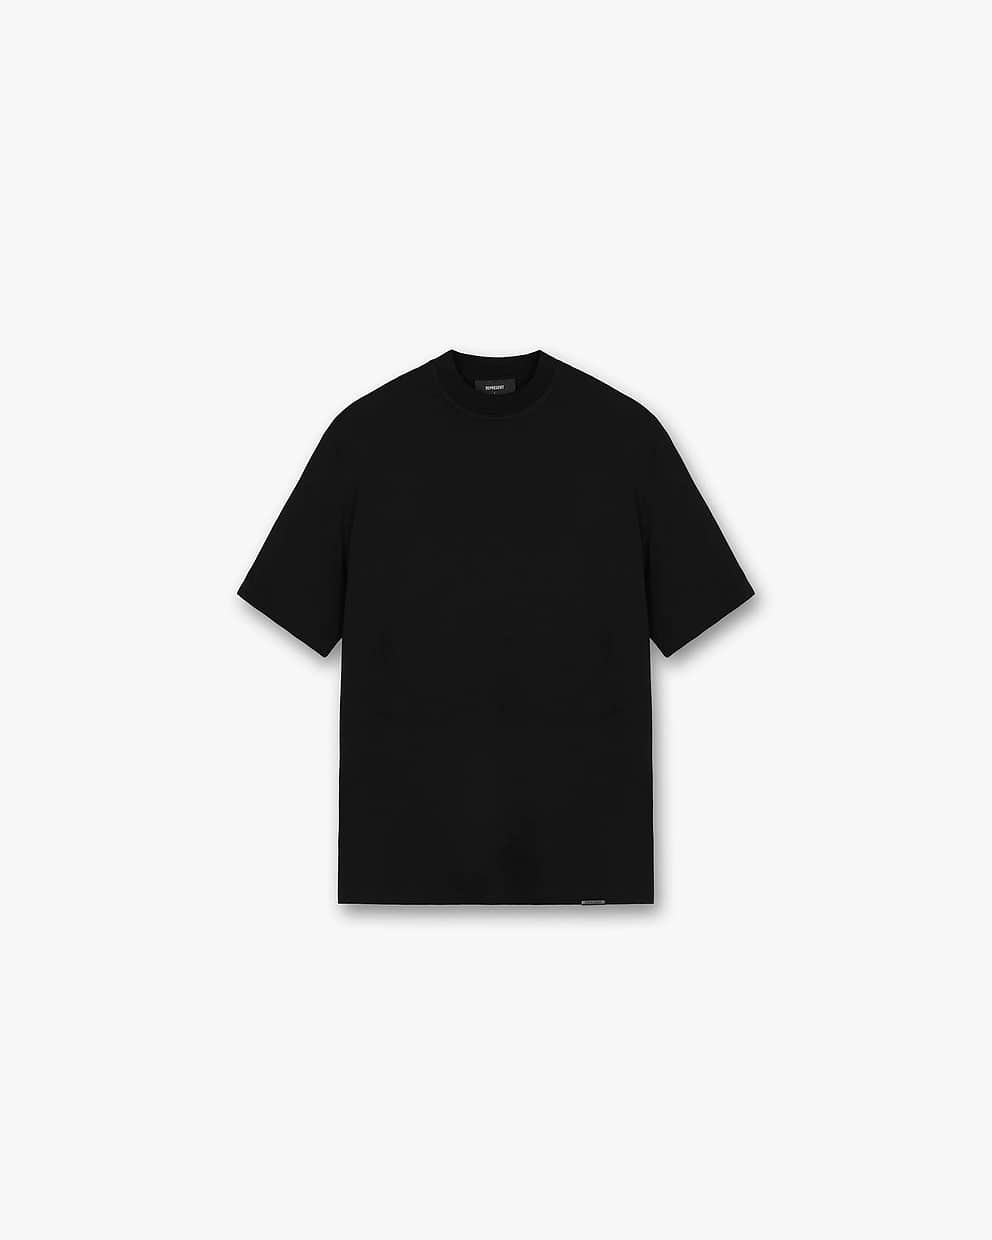 The Core T-Shirt - Jet Black